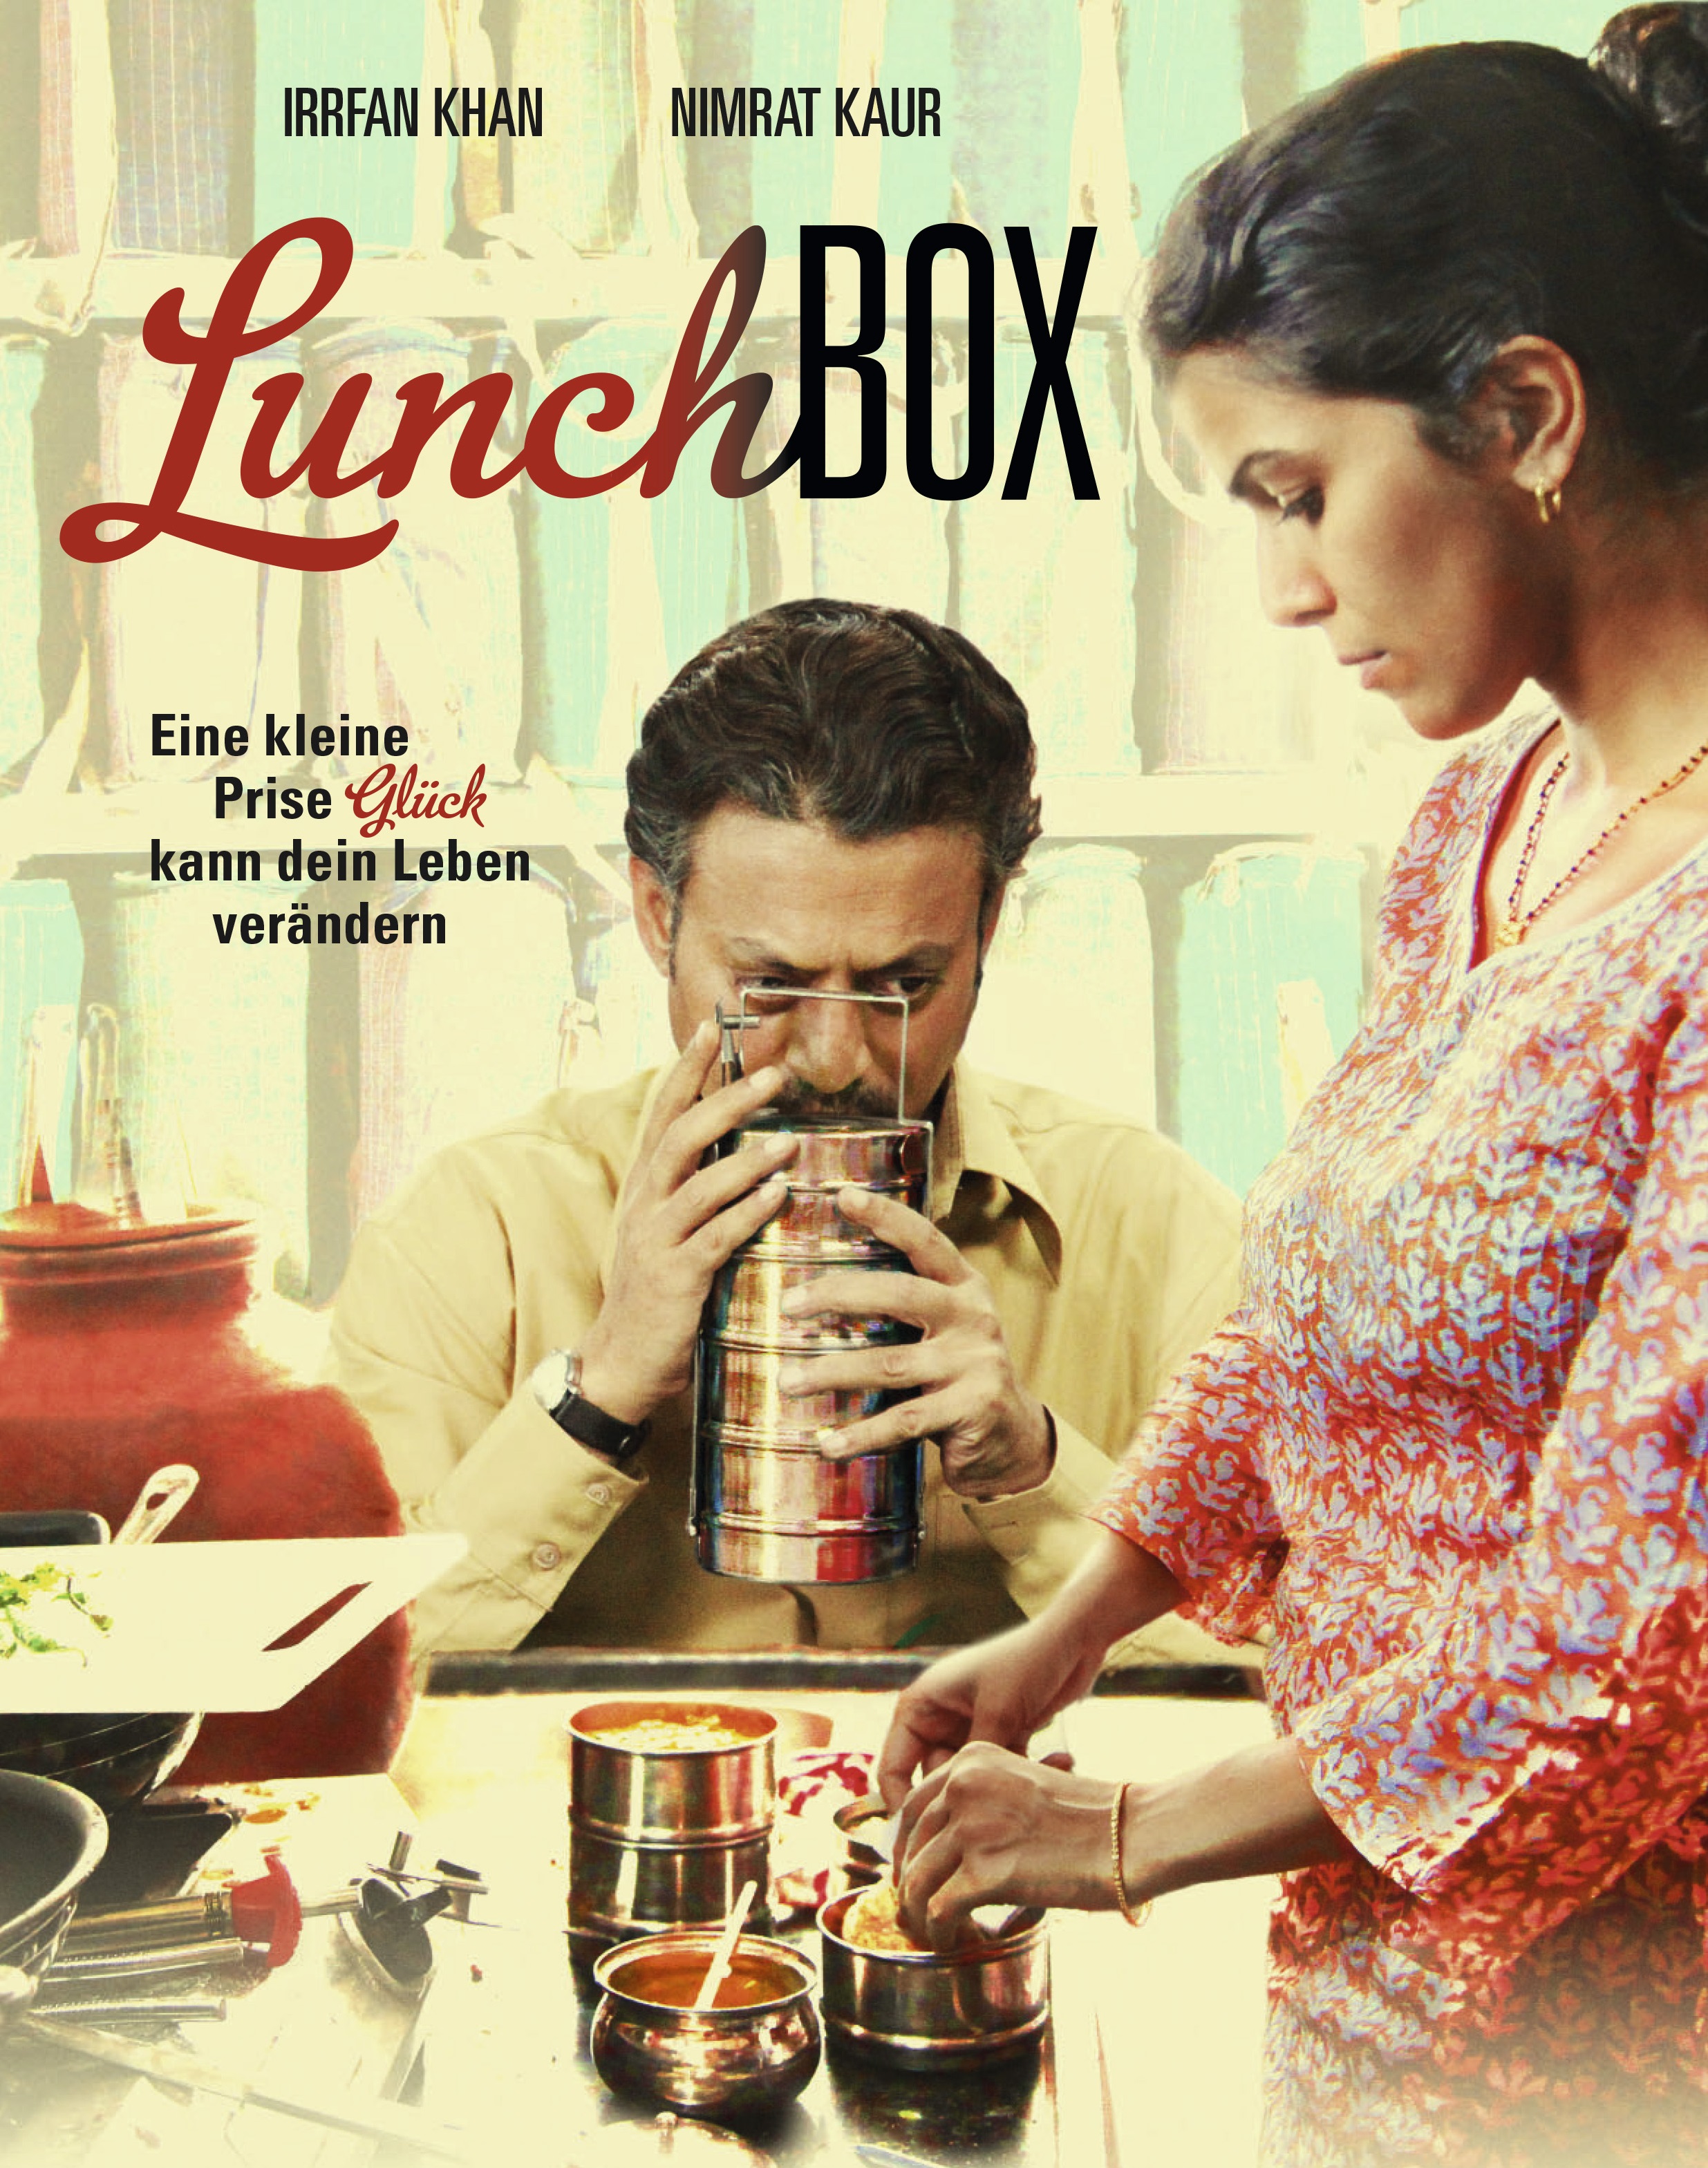 Irrfan Khan in Lunch Box